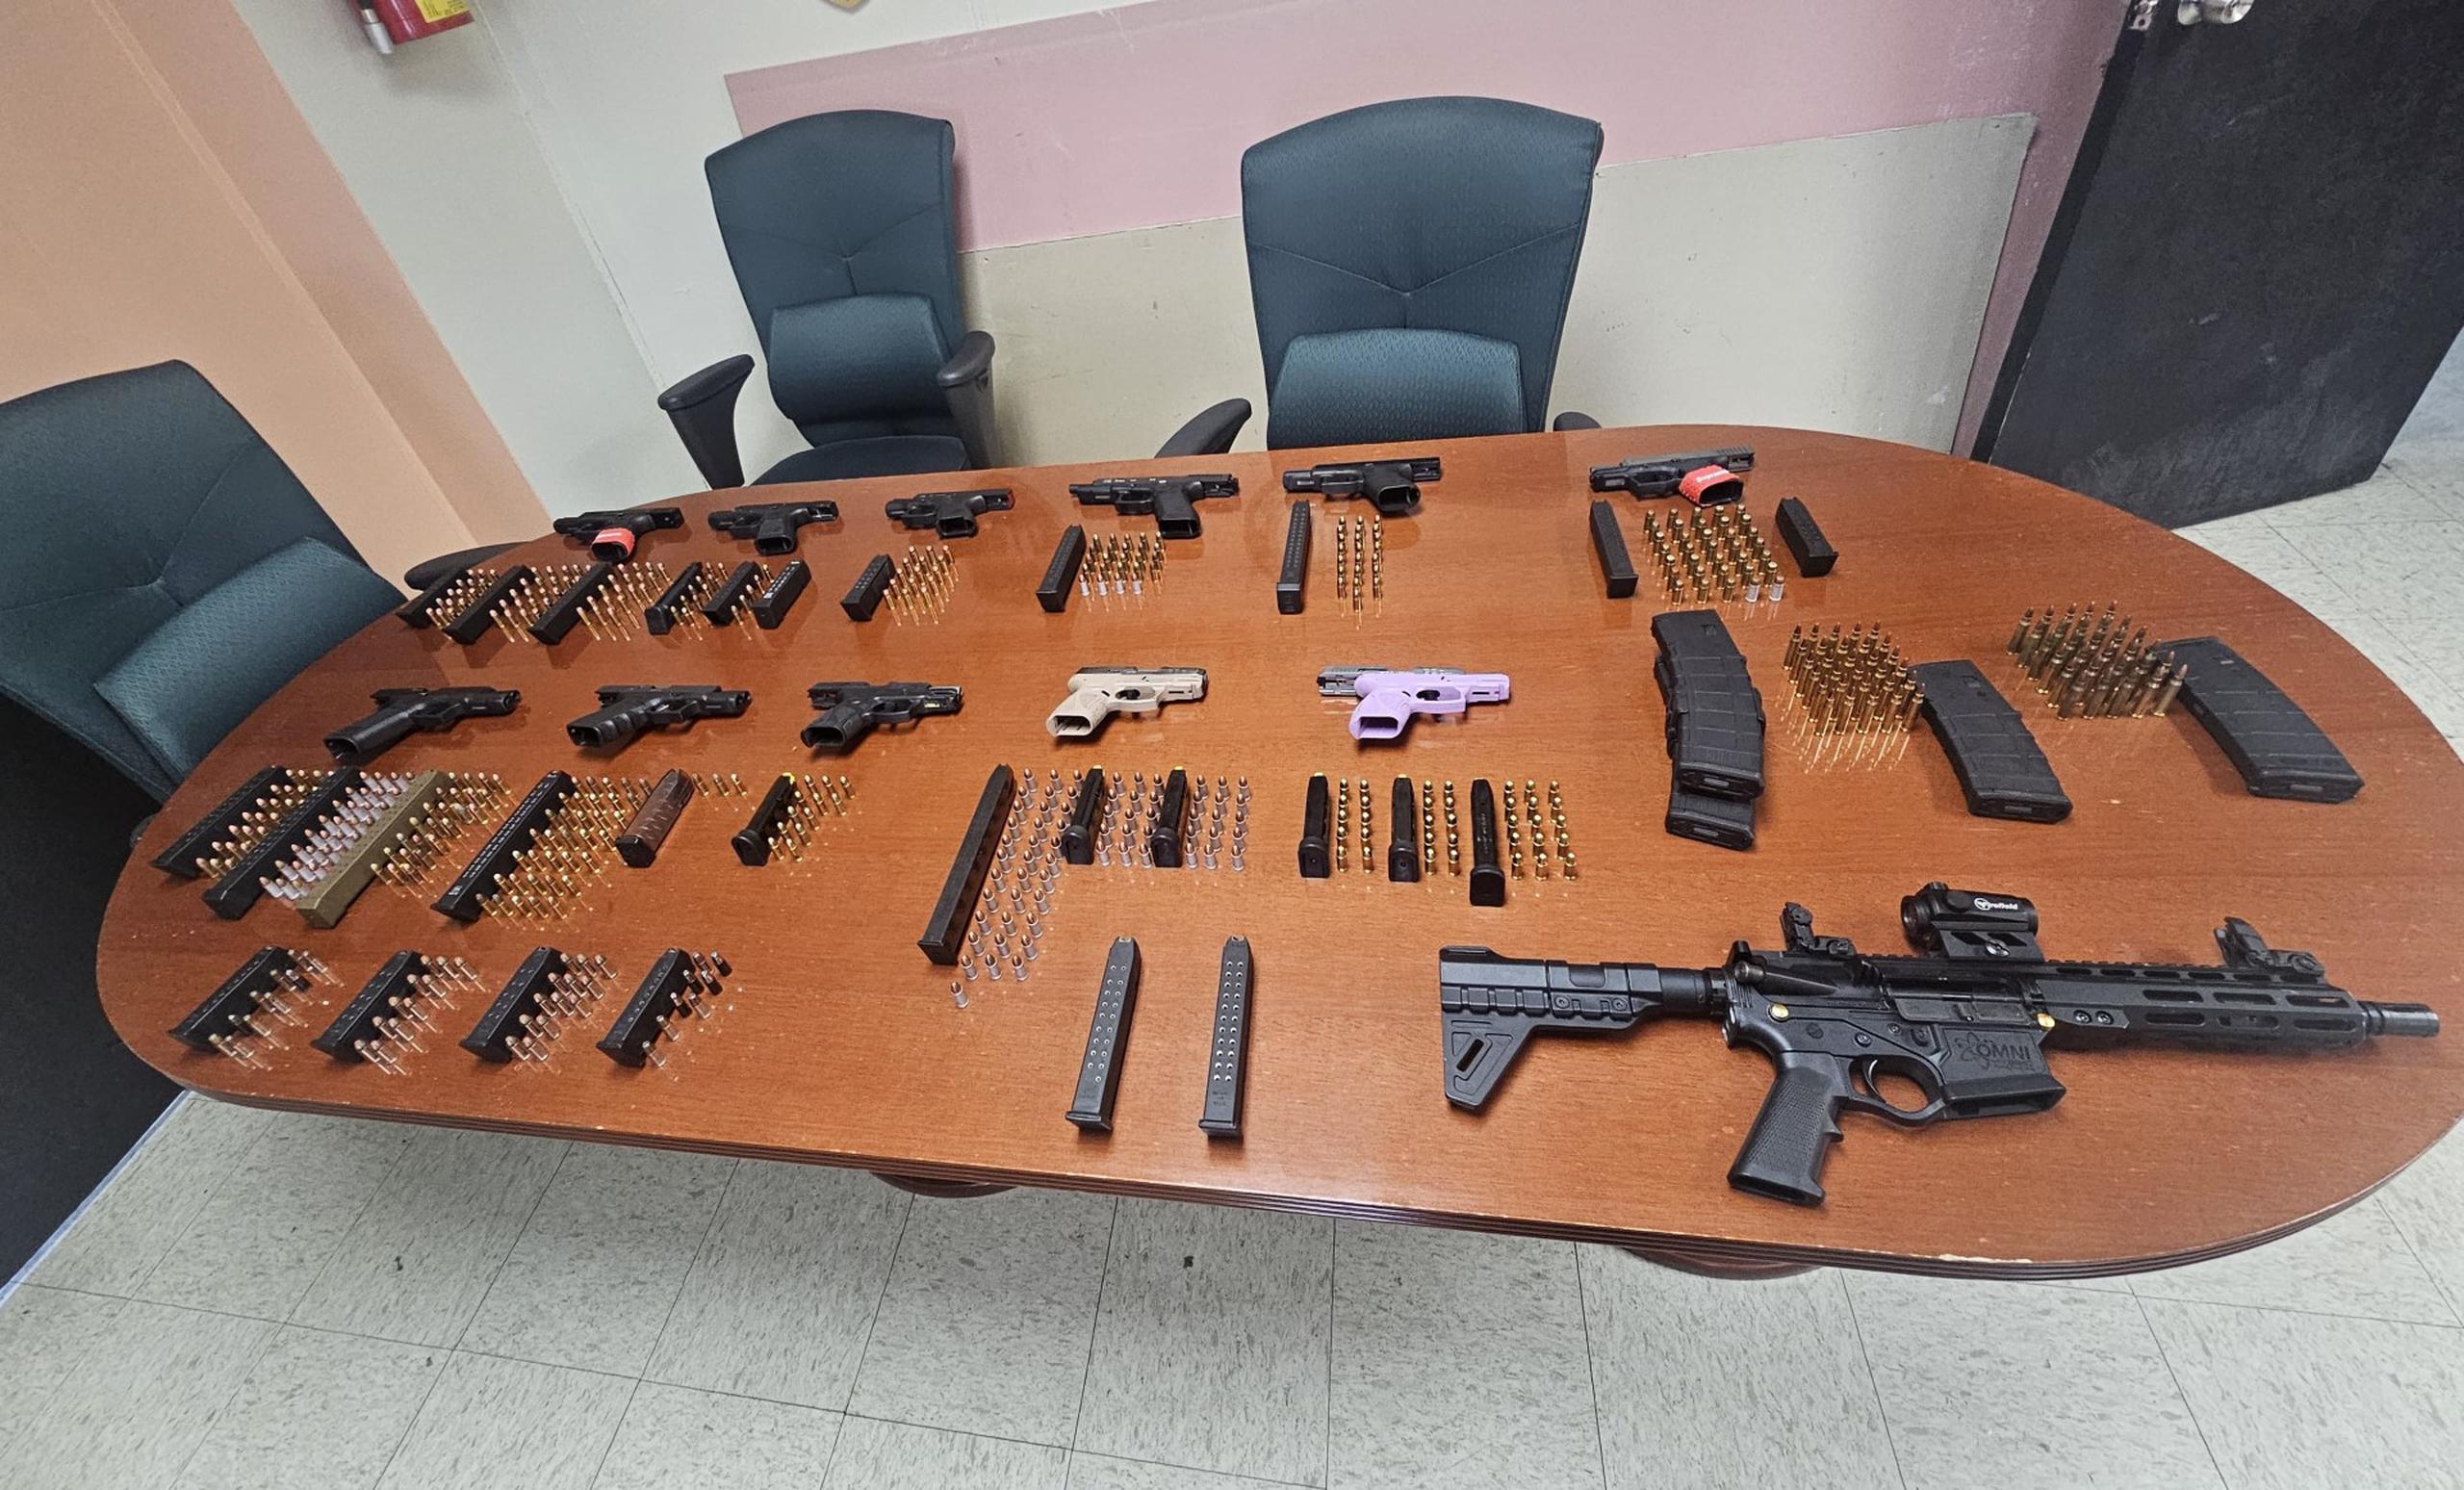 El Negociado de la Policía junto a la Comisión de Juegos de Puerto Rico, arrestaron a tres hombres y ocuparon 13 armas y unas 600 balas durante la inspección de varios negocios en Canóvanas y San Juan.